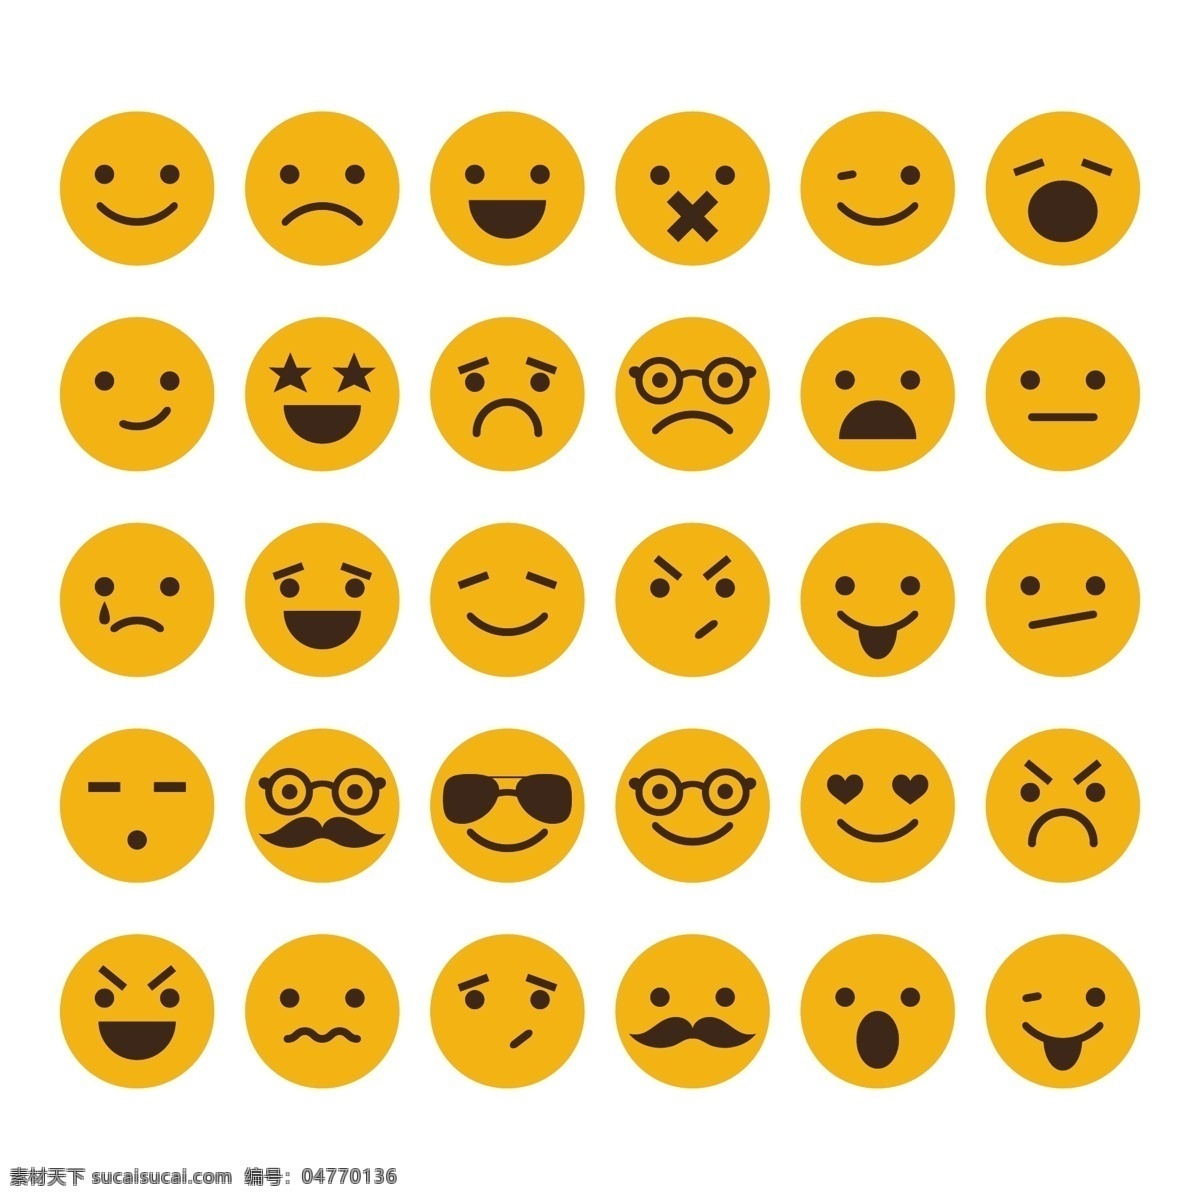 圆形表情图标 橙色圆形表情 表情图标 qq表情 手机表情 笑脸表情 难过表情 生气表情 可爱表情